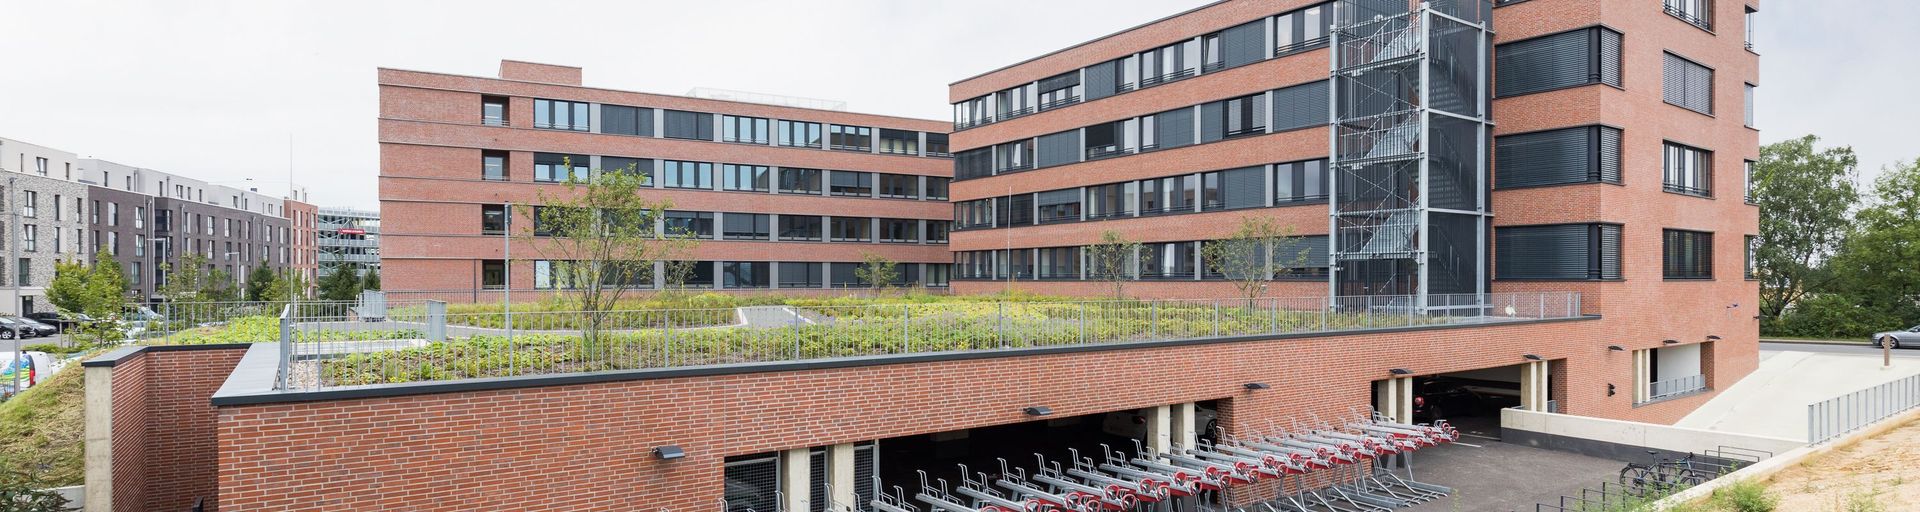 Immobilienentwickler Landmarken AG in Aachen, Nordrhein-Westfalen - Gesamtansicht des Verwaltungsgebäudes